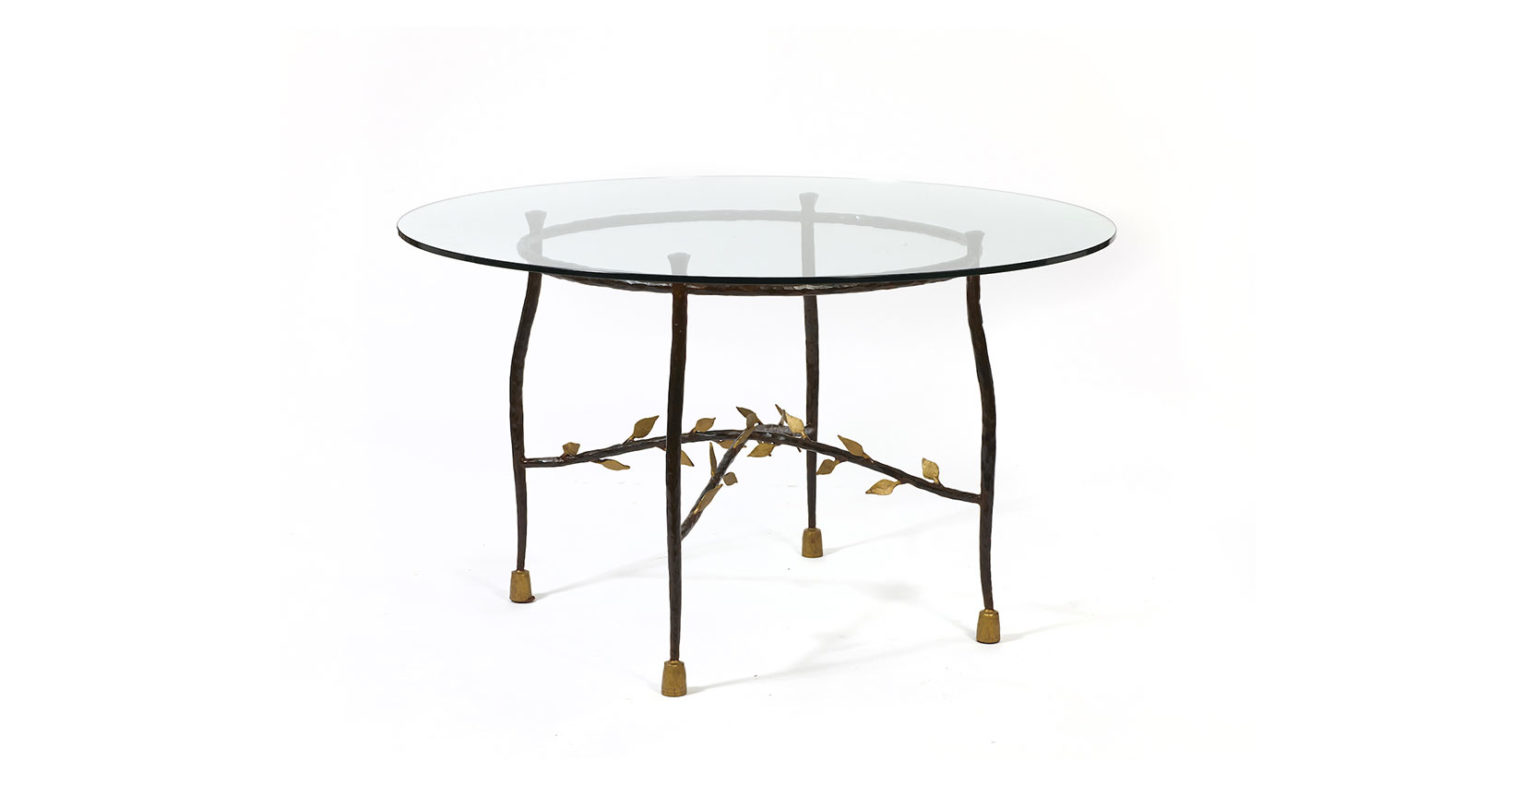 Garouste Bonetti, table de salle à manger ronde baroque, pieds courbés en fer forgé noir et petits sabots or, ornée de petites feuilles en fer forgé or, plateau en verre